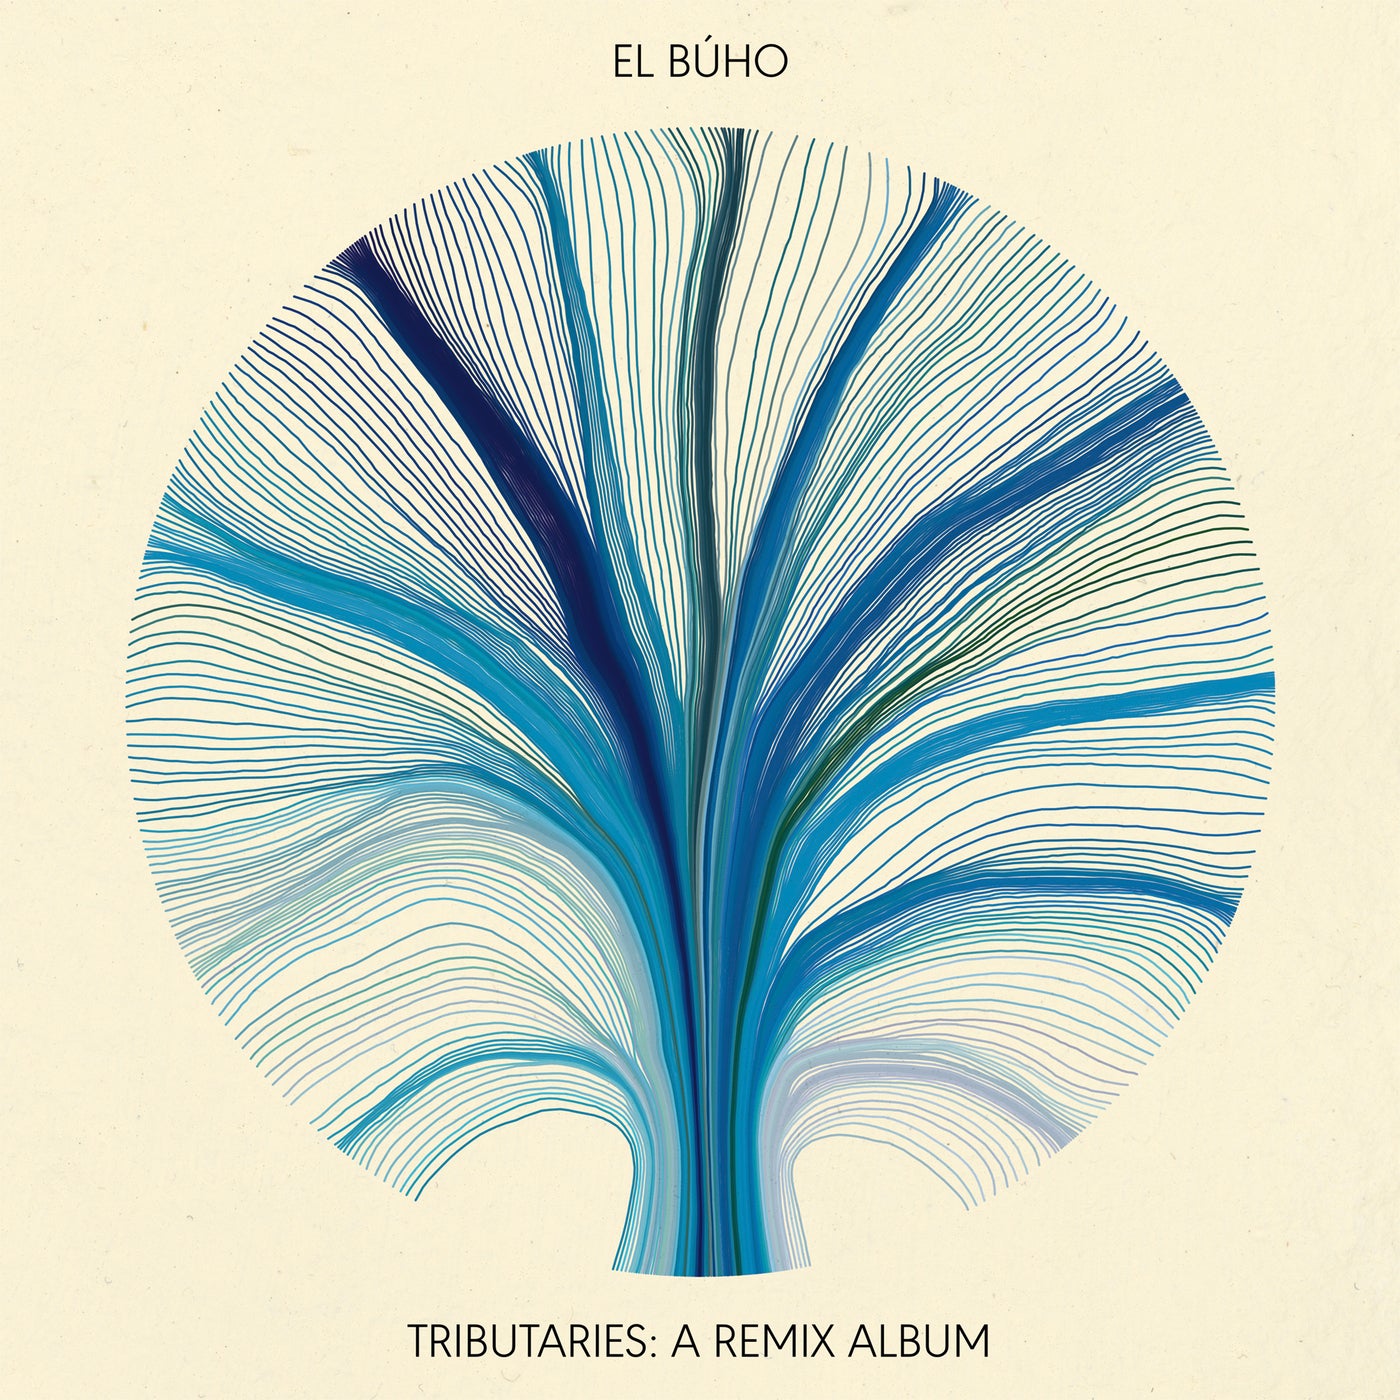 Tributaries: A Remix Album (El Búho Remixes) - El Búho Remixes